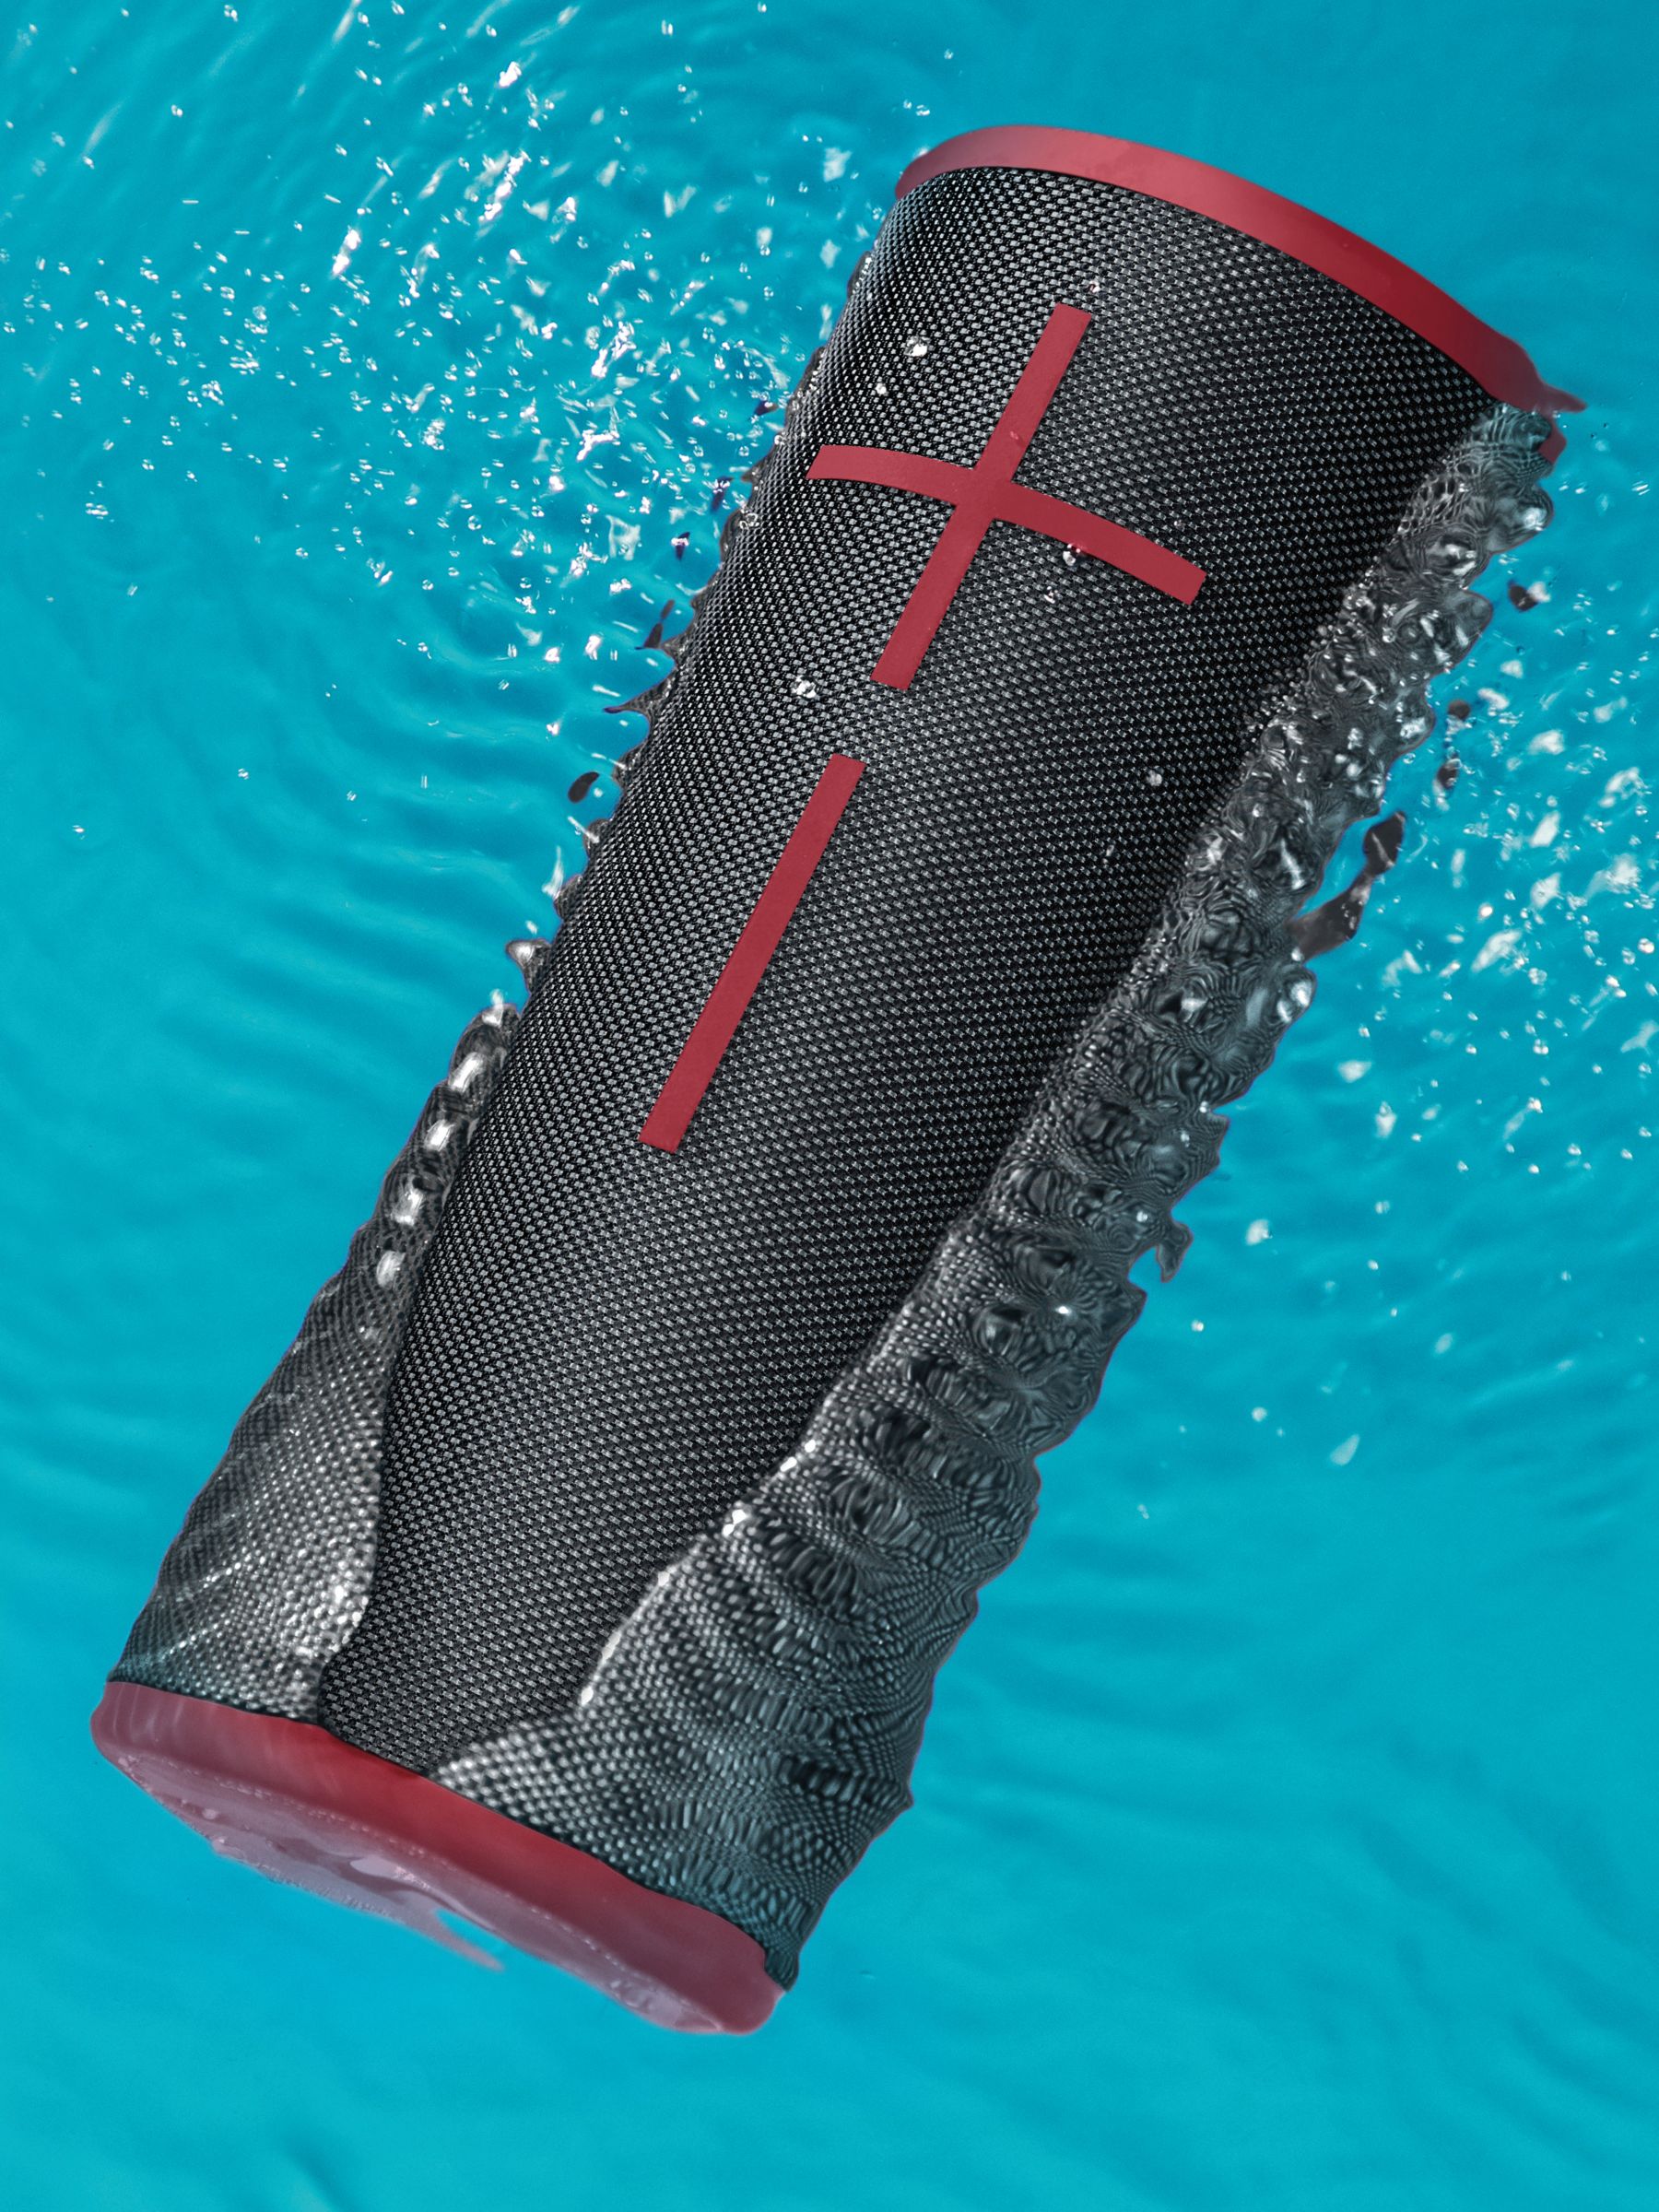 boom 3 speaker waterproof